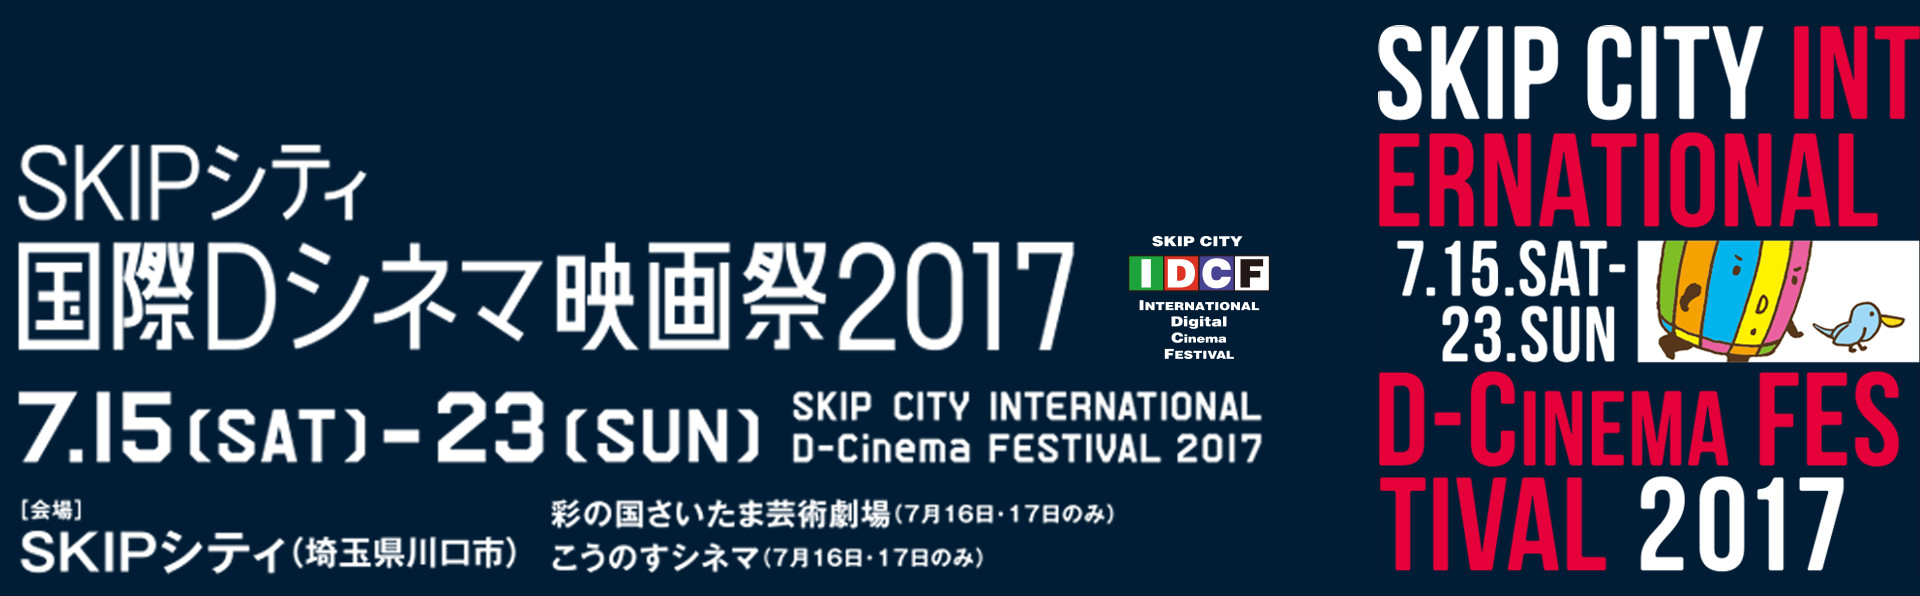 SKIPシティ国際Dシネマ映画祭2017のHPはコチラ